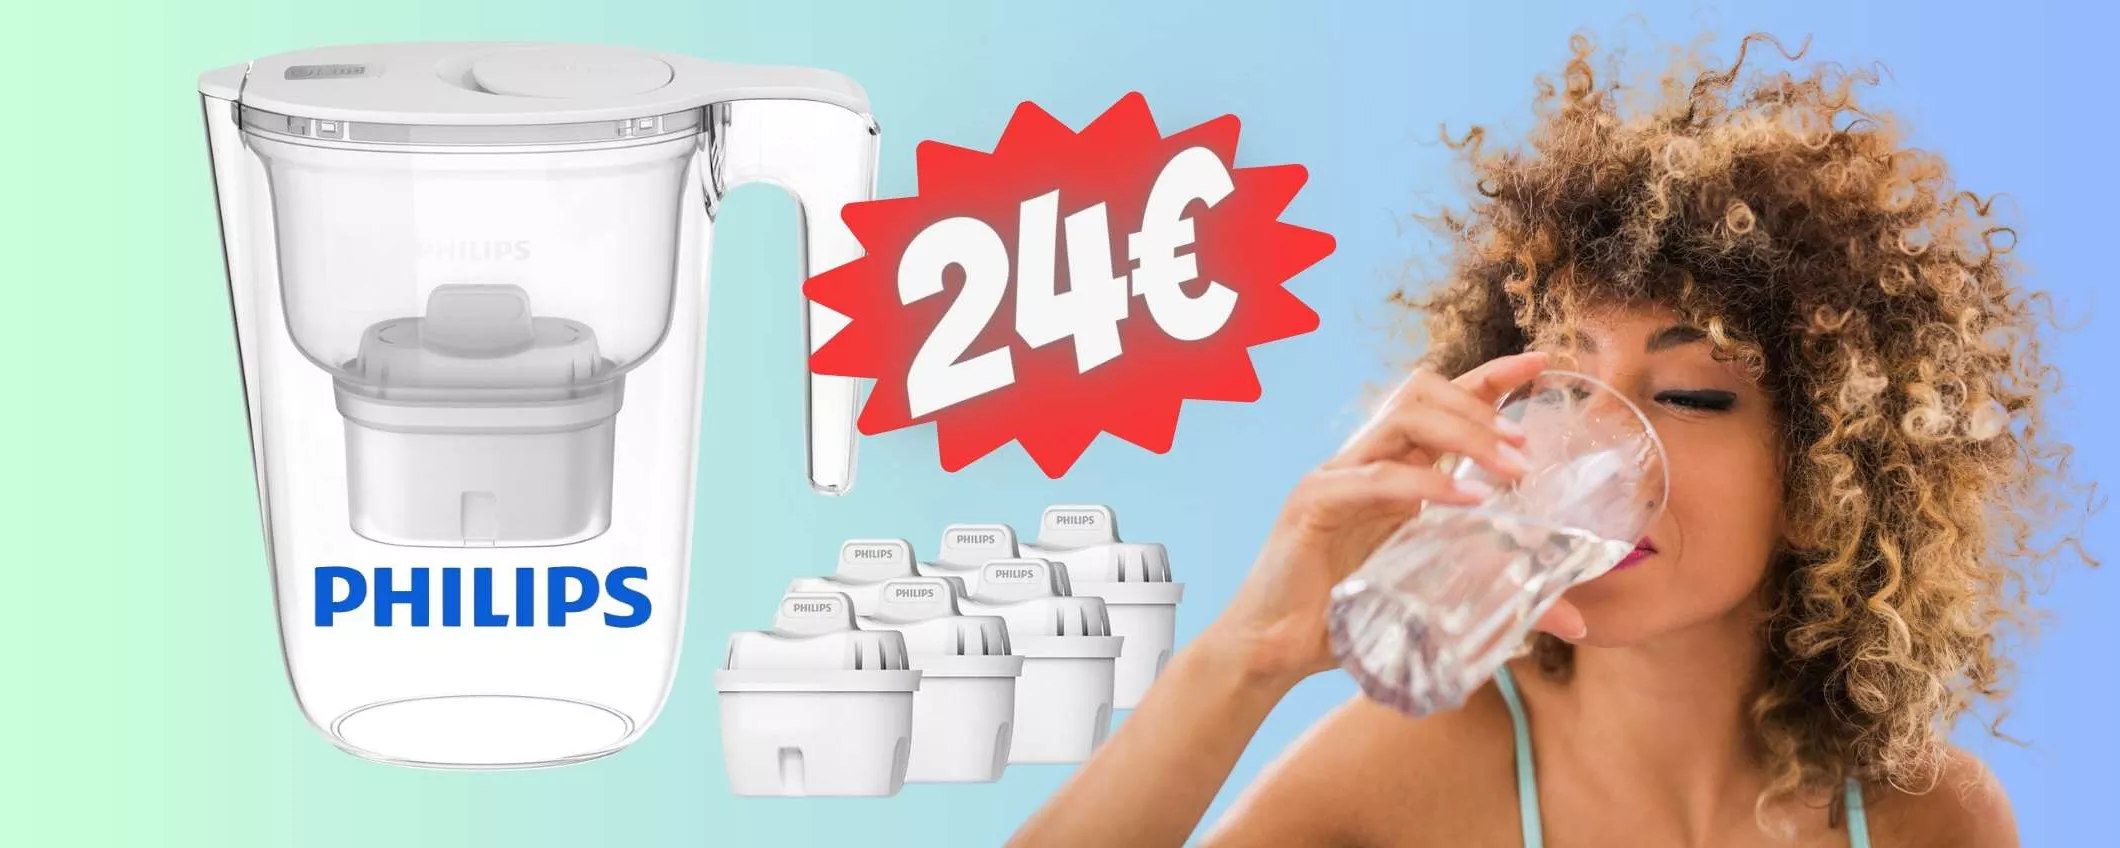 Caraffa filtrante Philips con 6 cartucce per bere l'acqua pulita (24€)